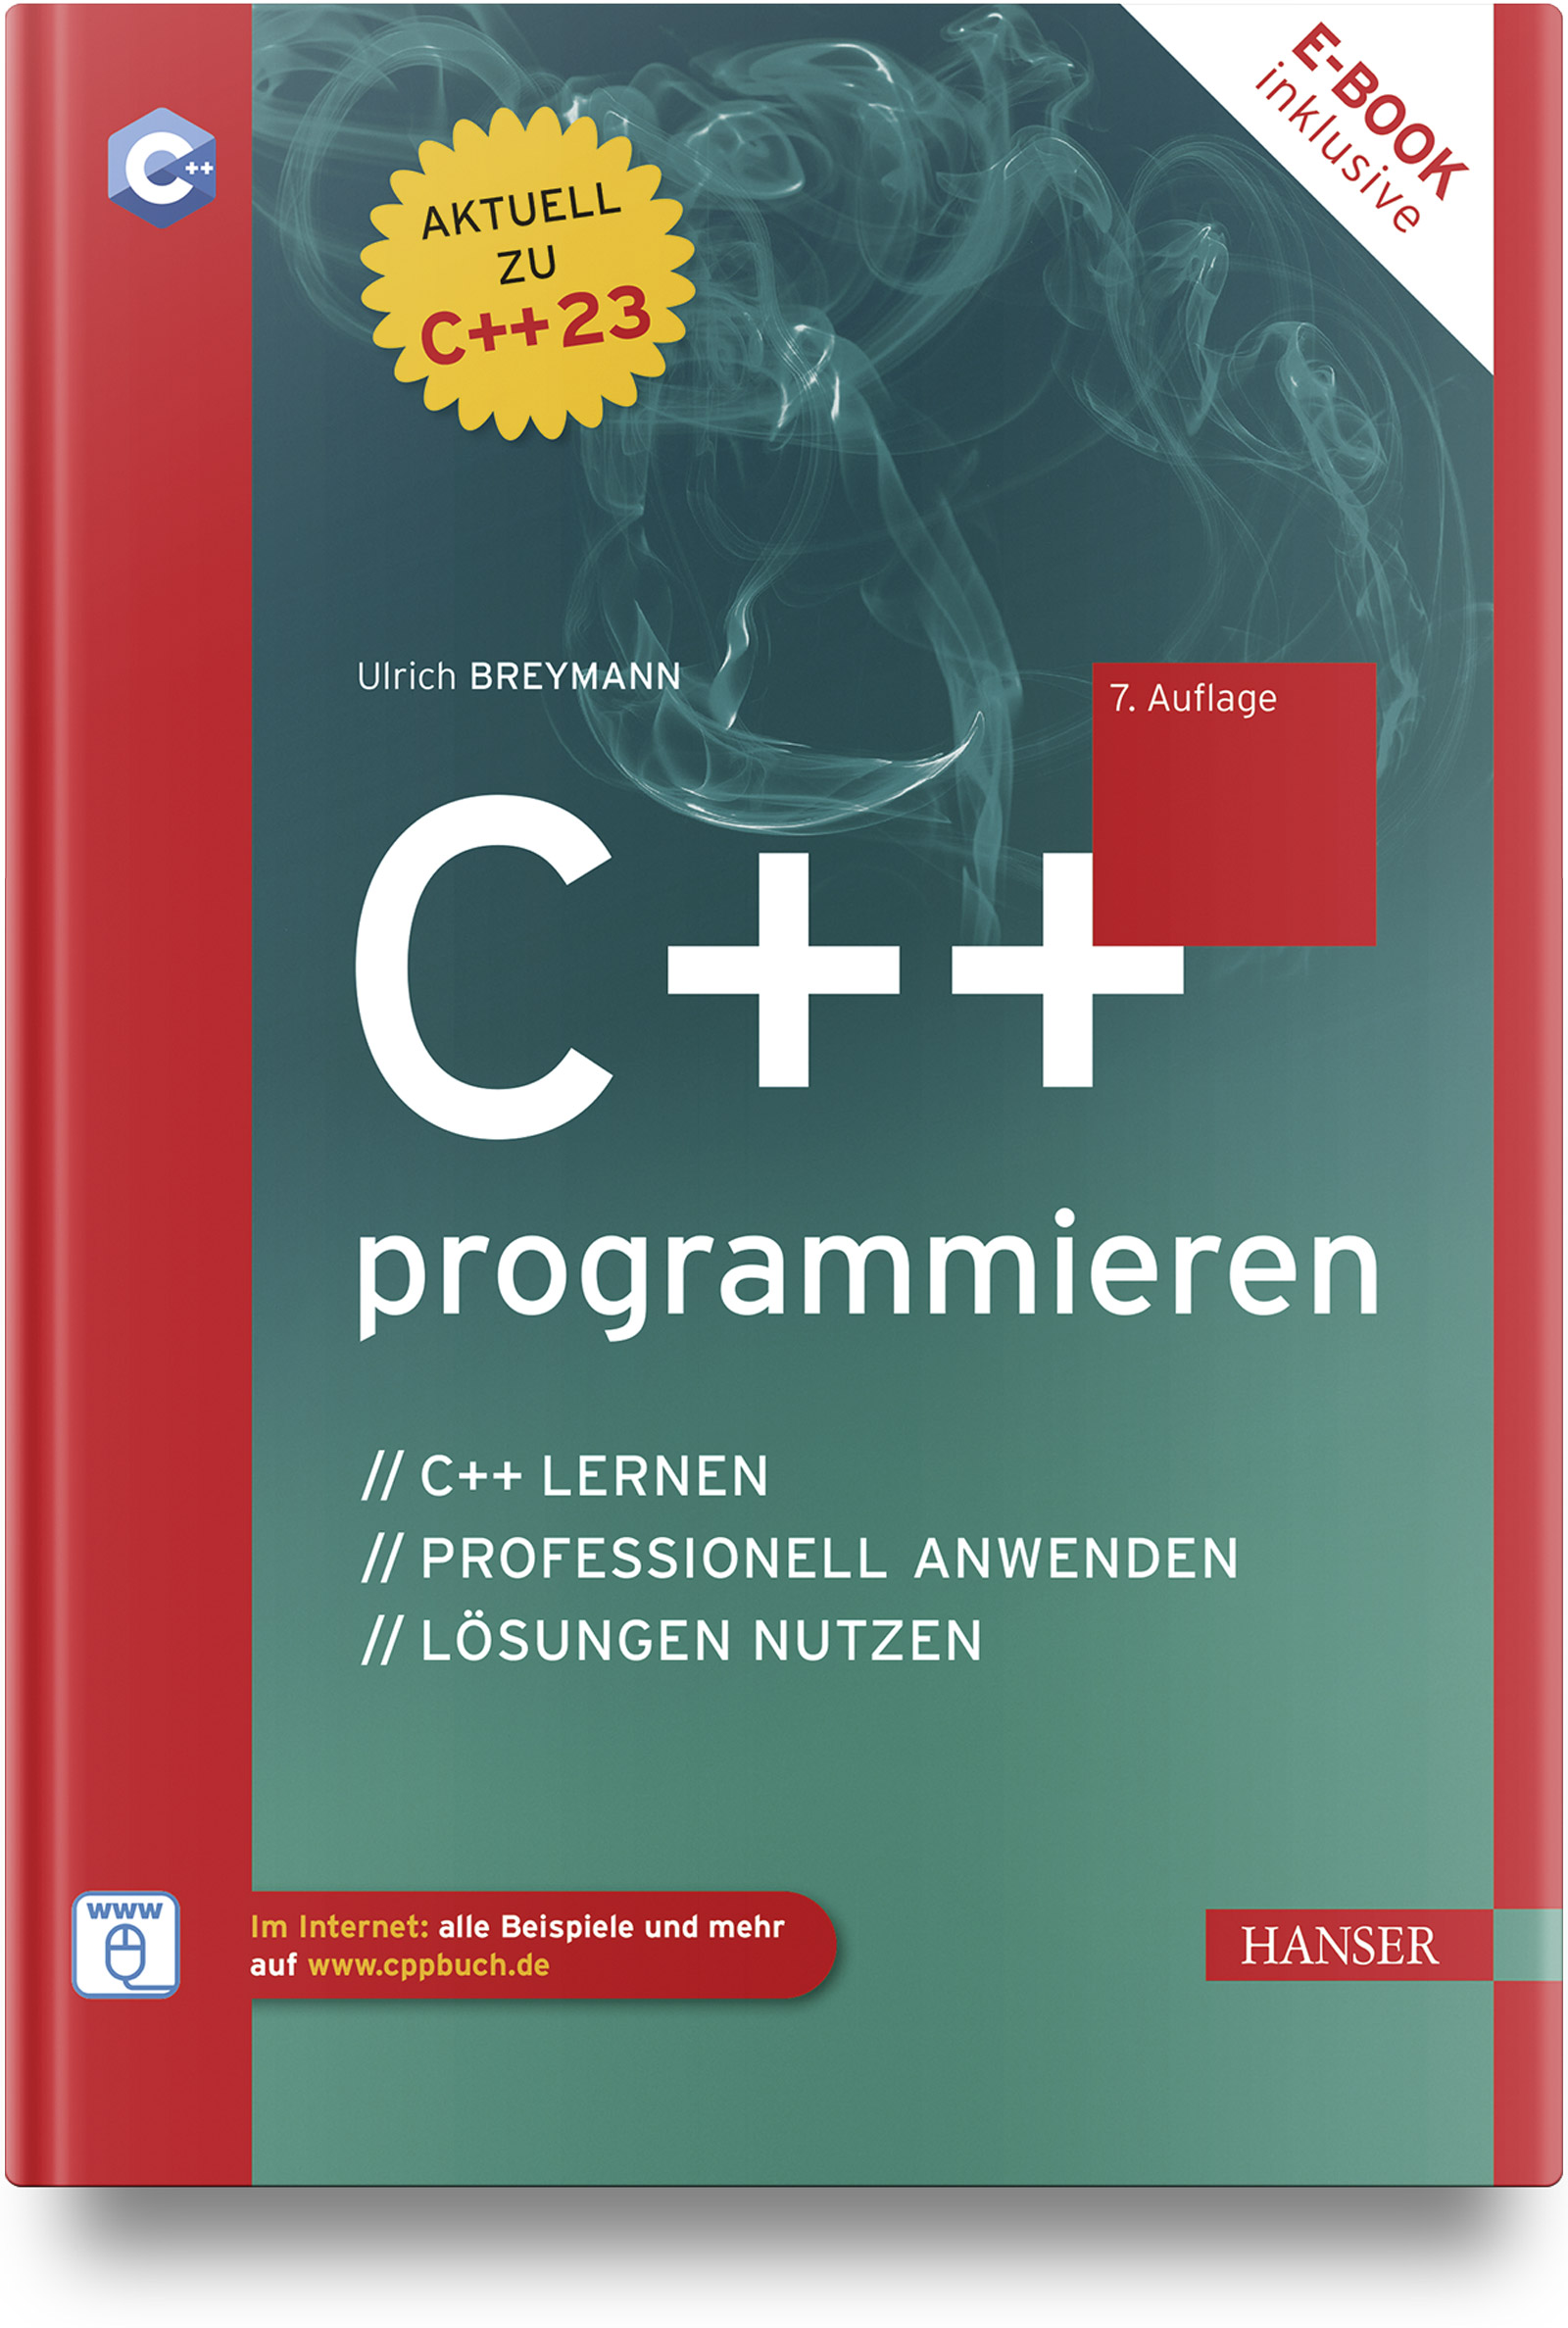 C++ programmieren (7. Auflg.)